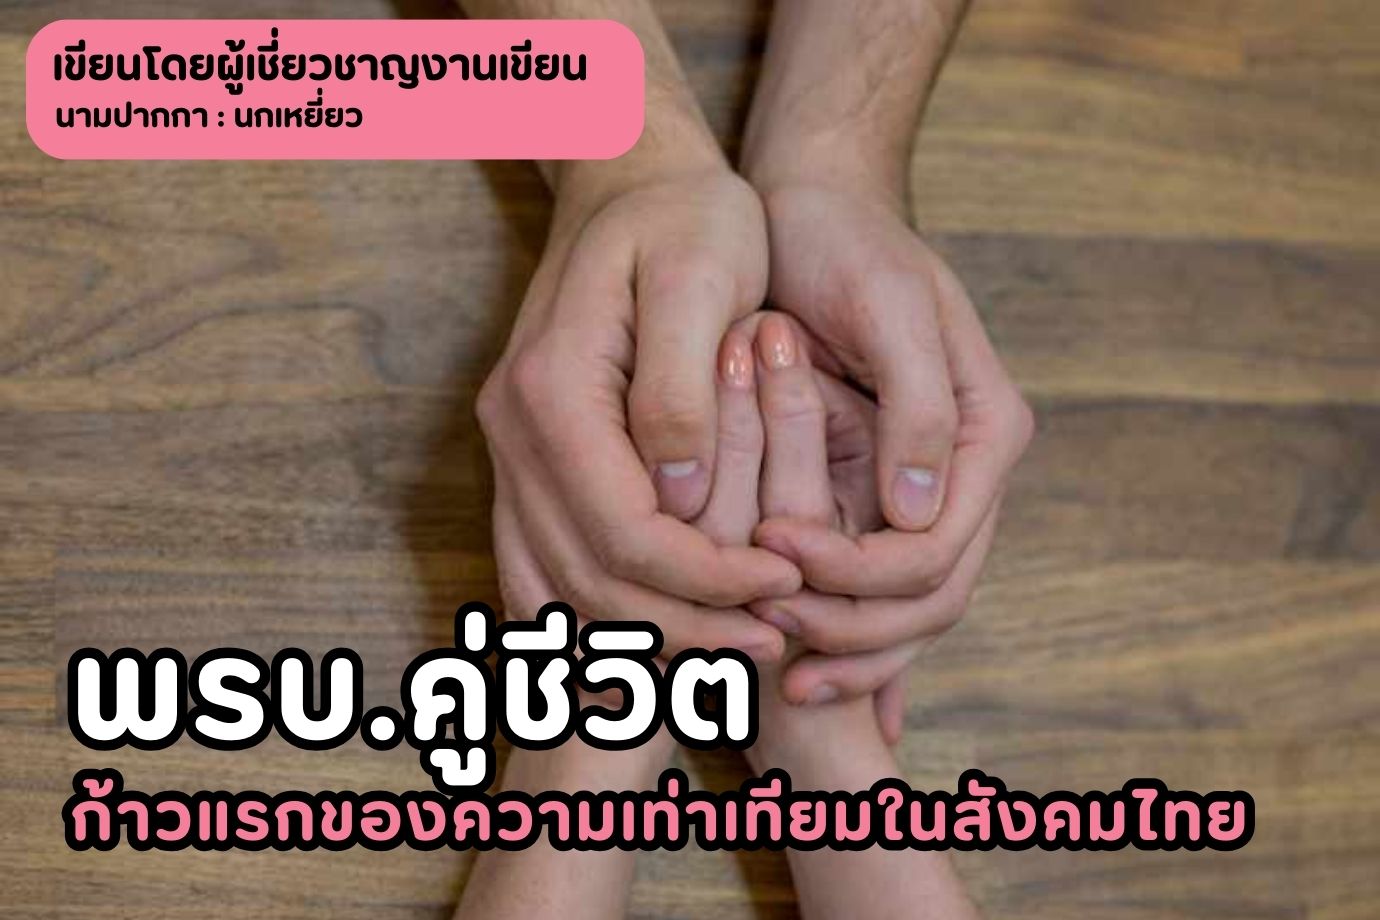 พรบ.คู่ชีวิต ก้าวแรกของความเท่าเทียมในสังคมไทย กฎหมายสมรสที่ LGBTQ รอคอย